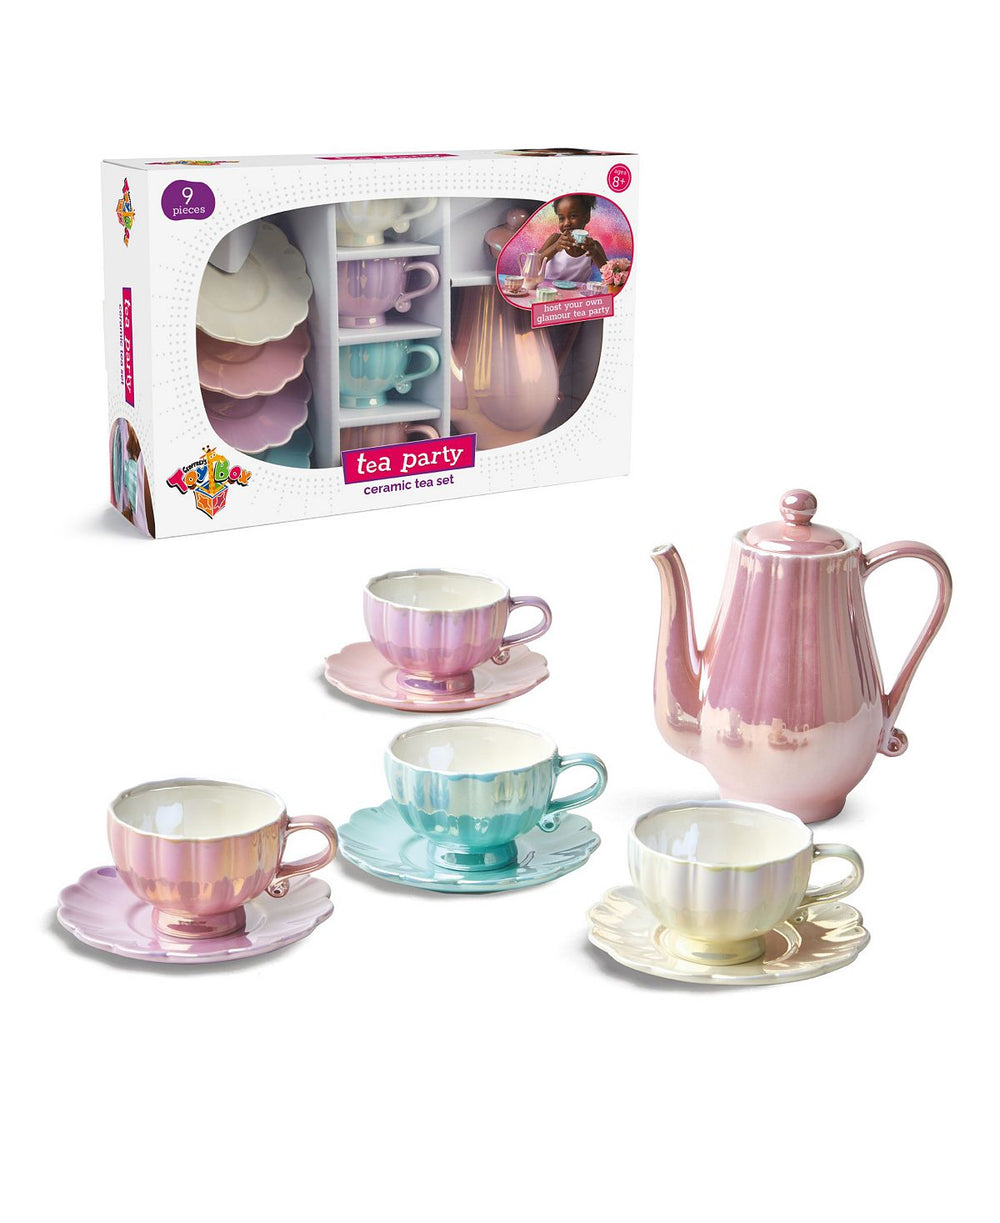 Geoffrey's Toy Box 9-Piece Ceramic Tea Party Set - Pastel Colors